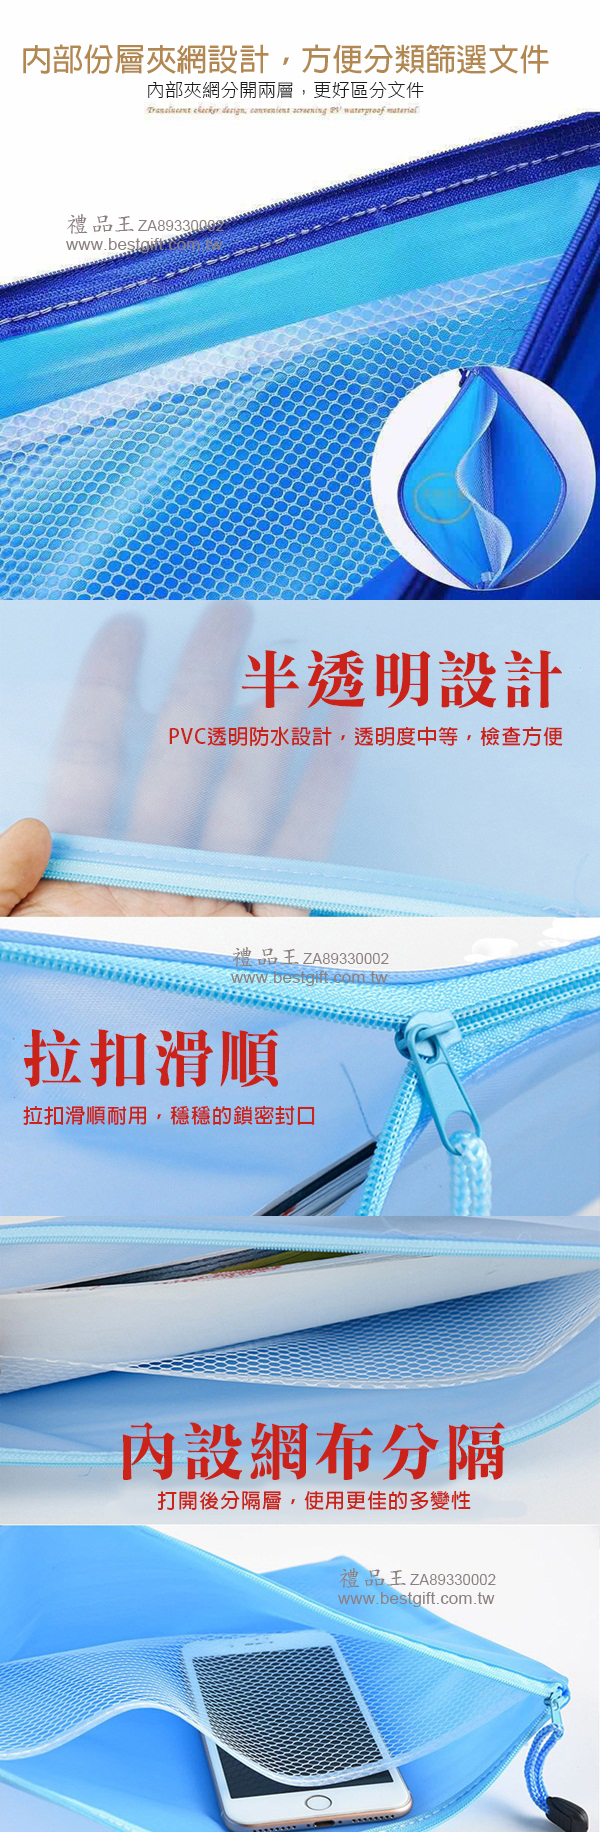 PVC磨砂網格透明拉鍊A4文件袋